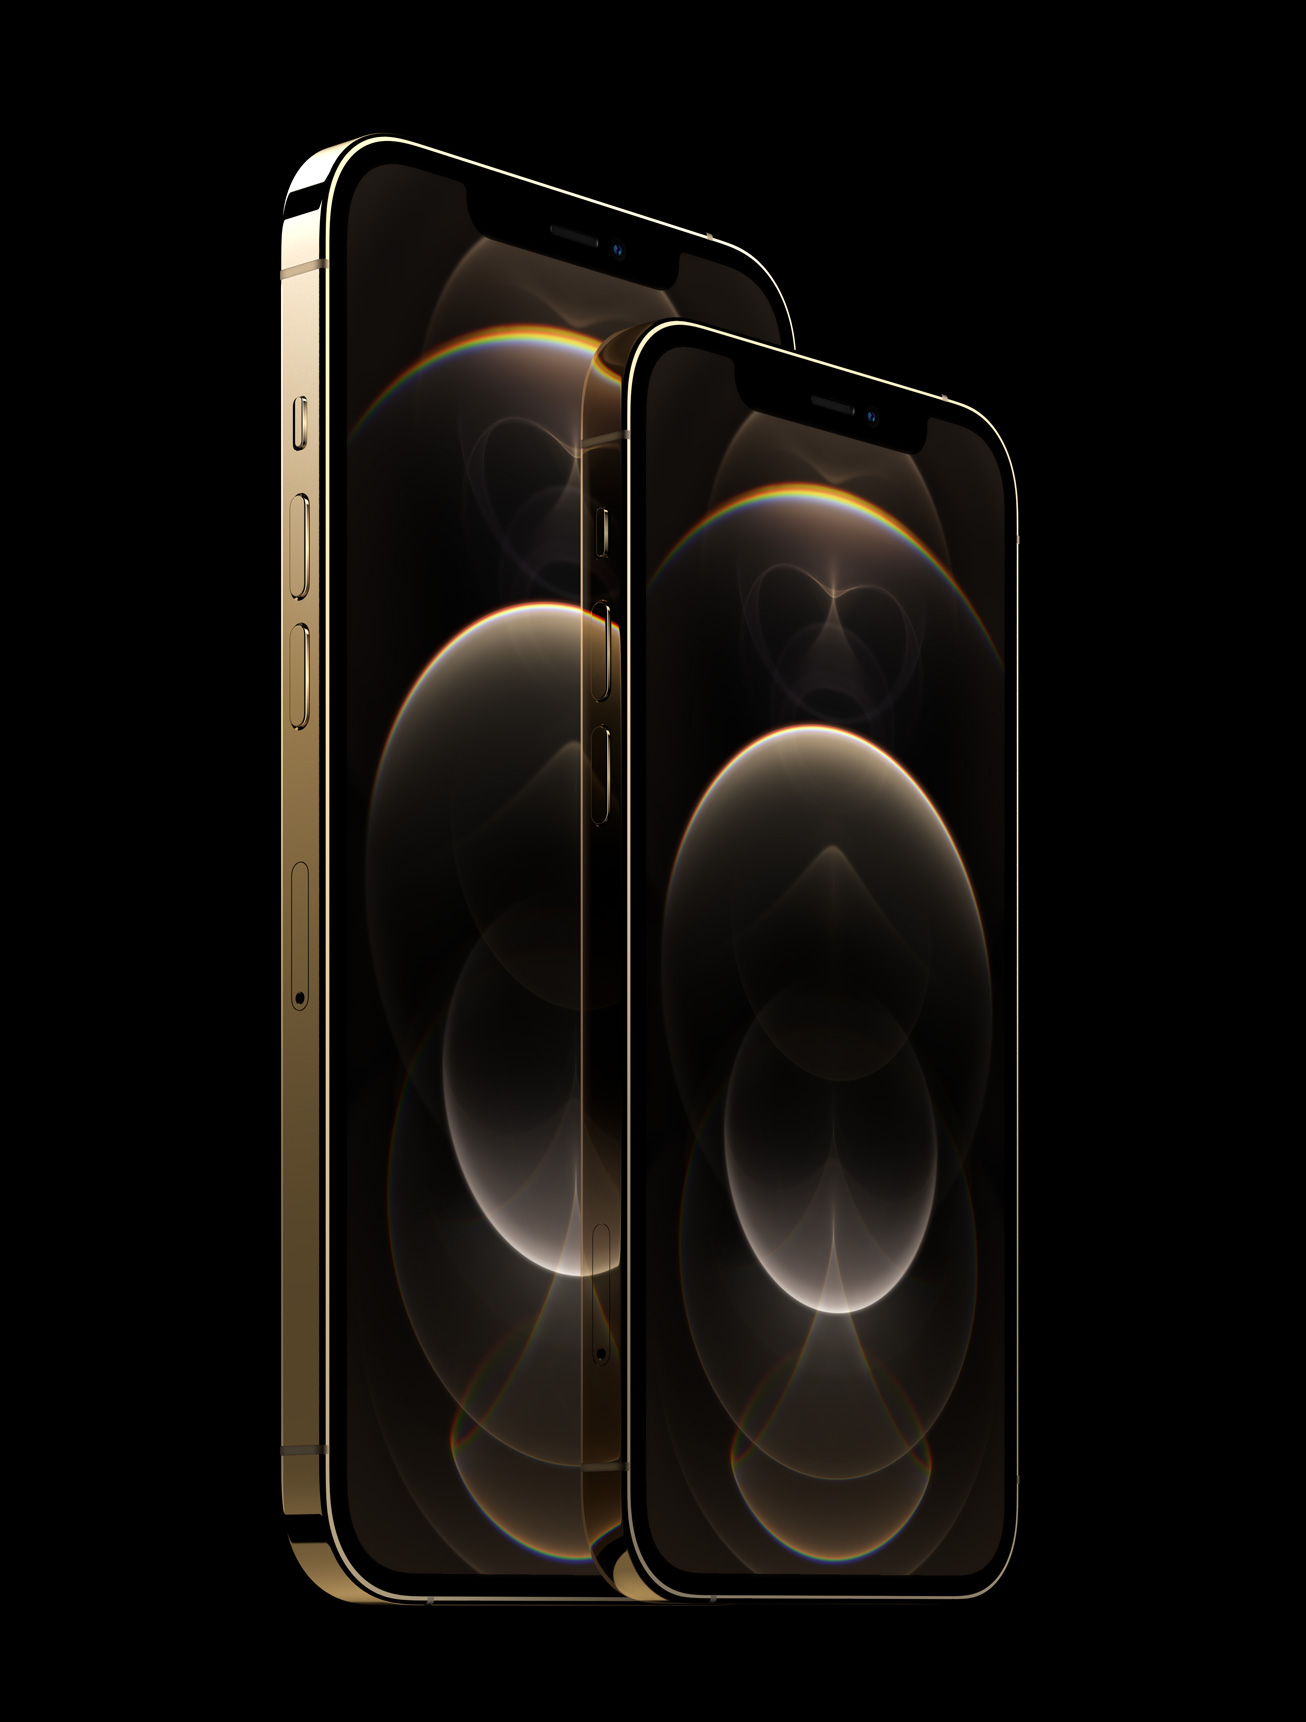 El iPhone 12 Pro y el iPhone 12 Pro Max en el acabado de acero inoxidable dorado